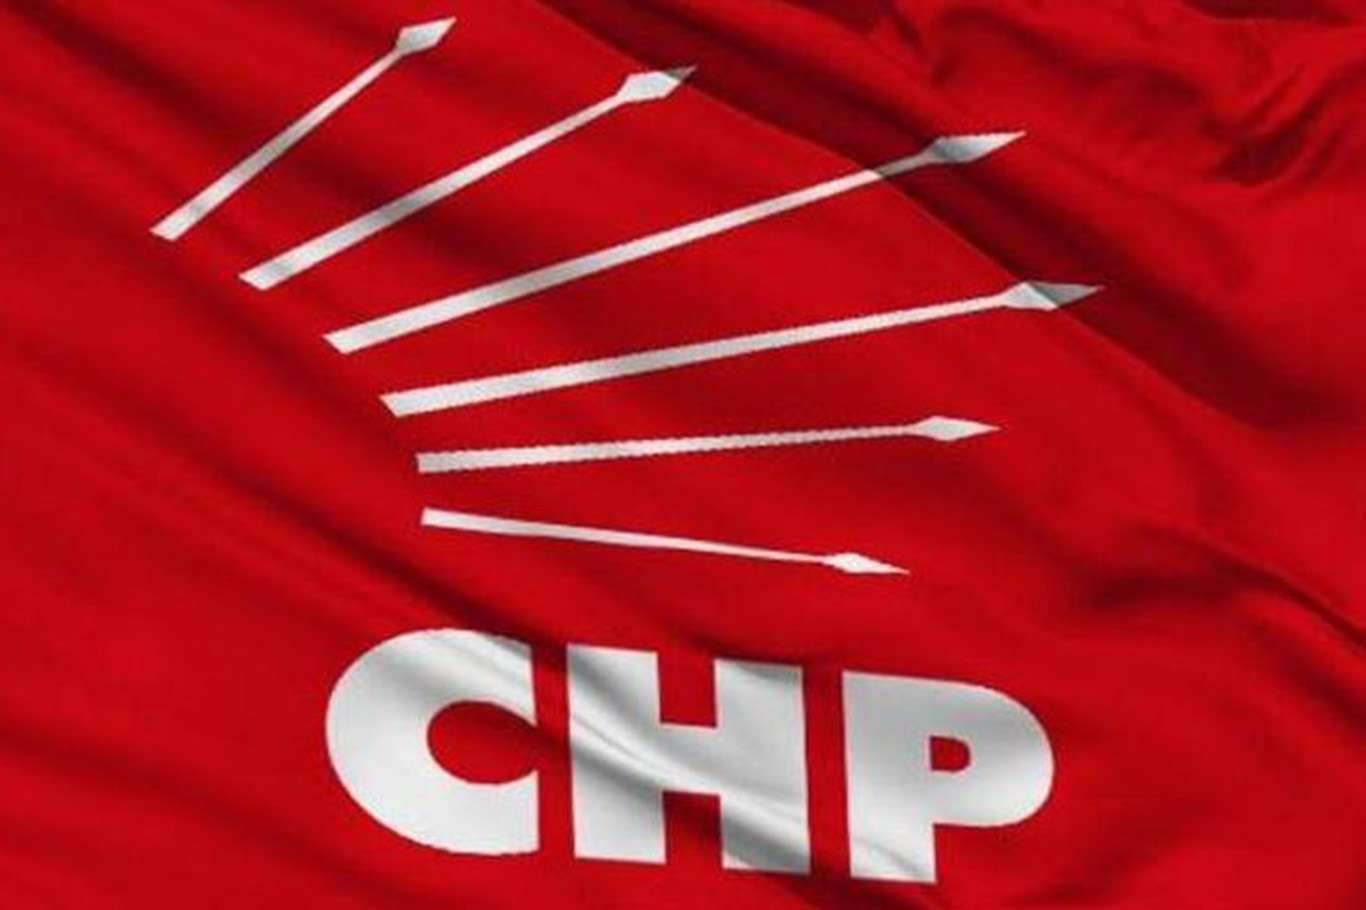 CHP İstanbul Sözleşmesi için Danıştay'a başvurdu